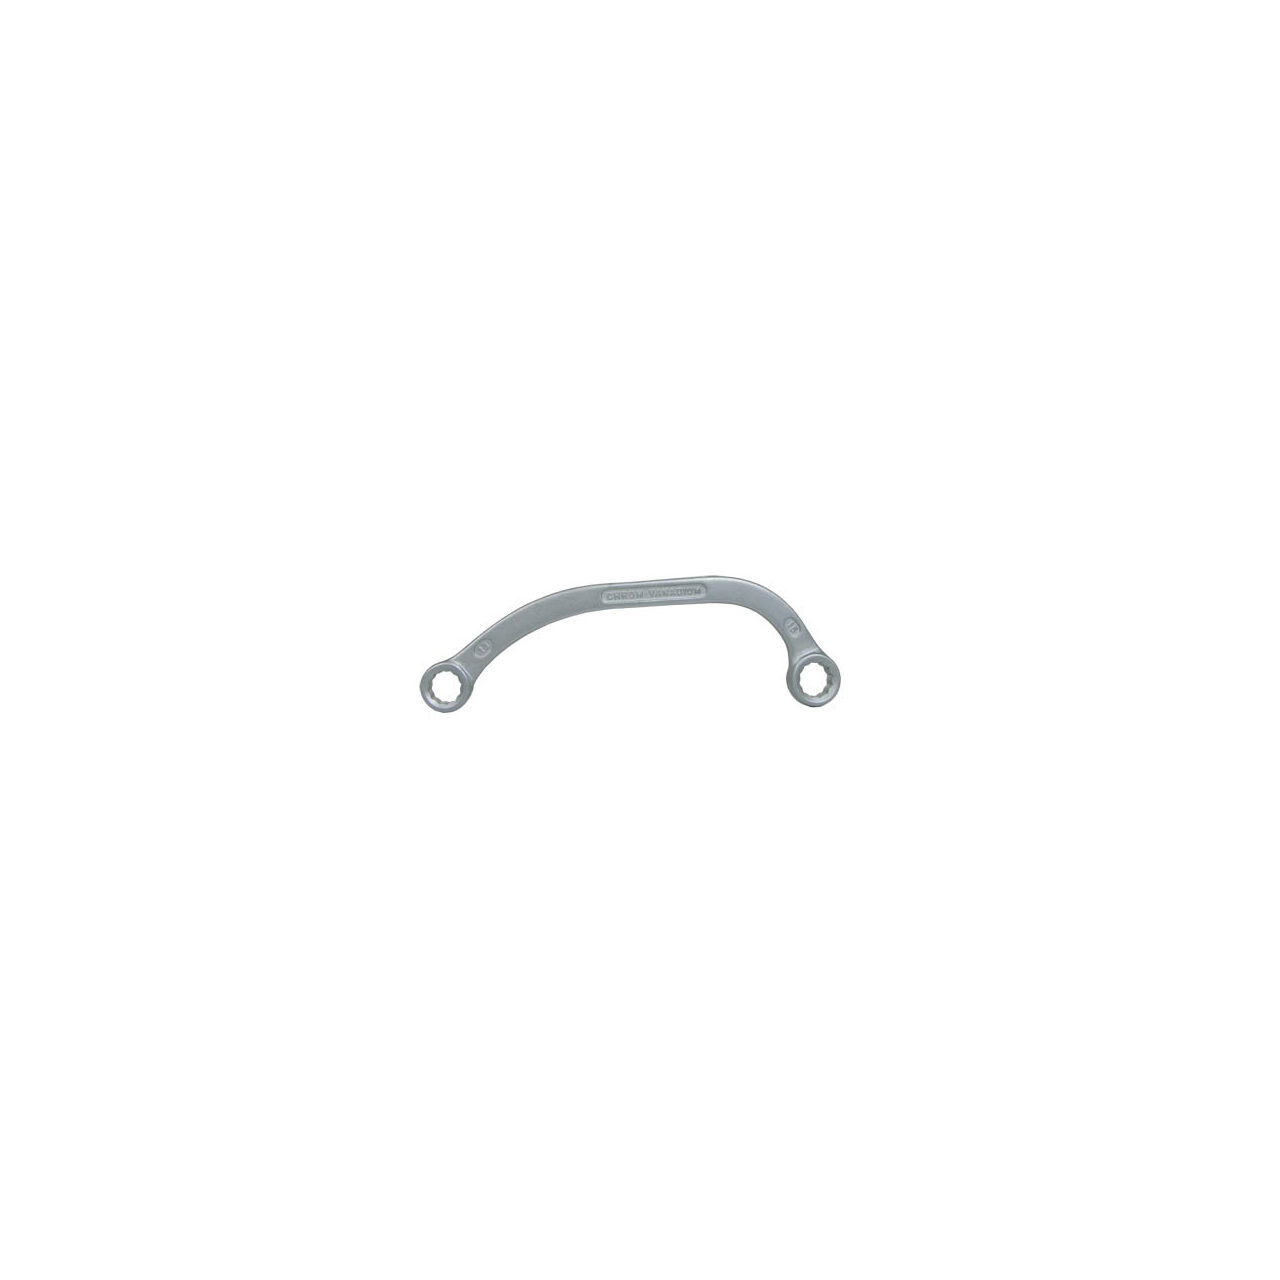 Cheie inelara curbata CR-VA Proline, fier forjat, 12 x 13 mm